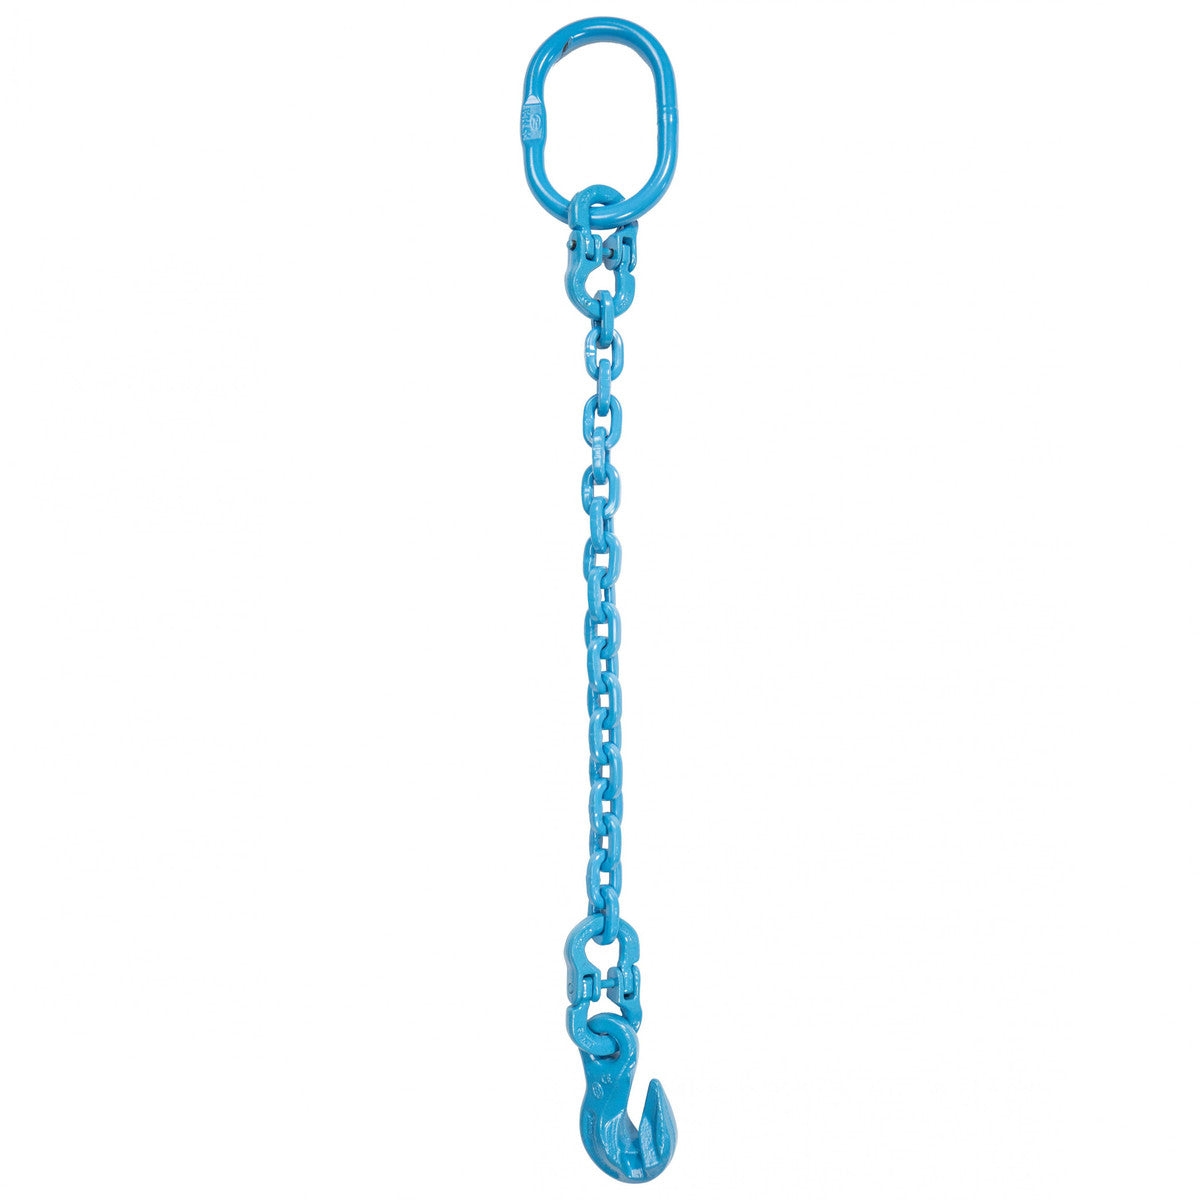 9/32" x 4' - Pewag Single Leg Chain Sling w/ Grab Hook - Grade 120